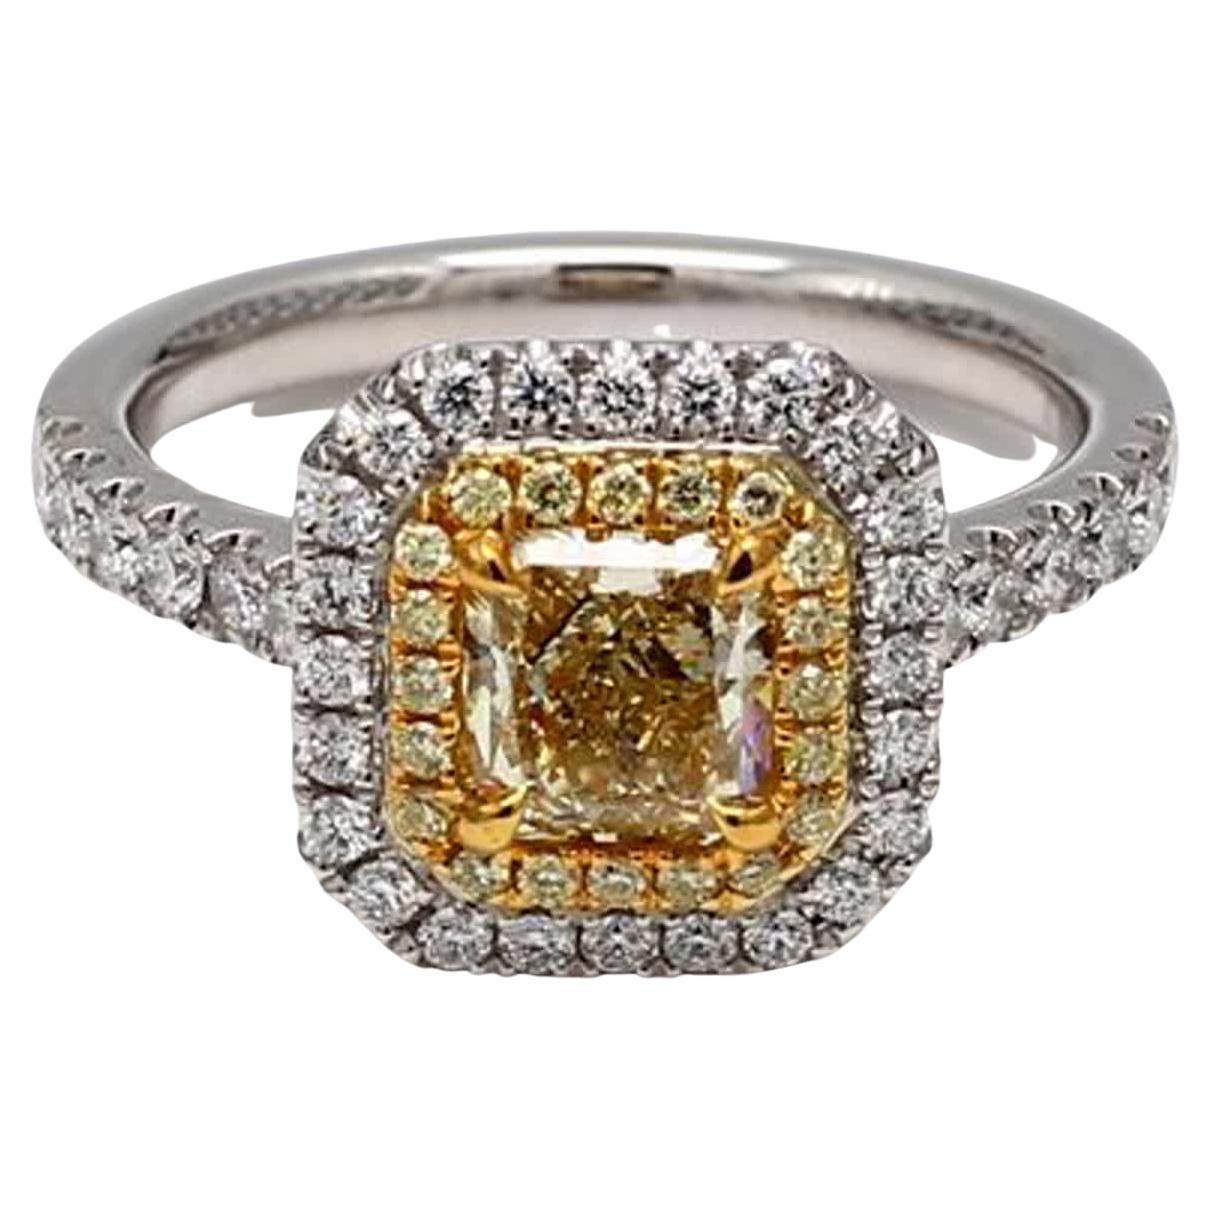 Bague plaquée en diamant jaune radiant et blanc de 1.54 carat poids total, certifiée GIA